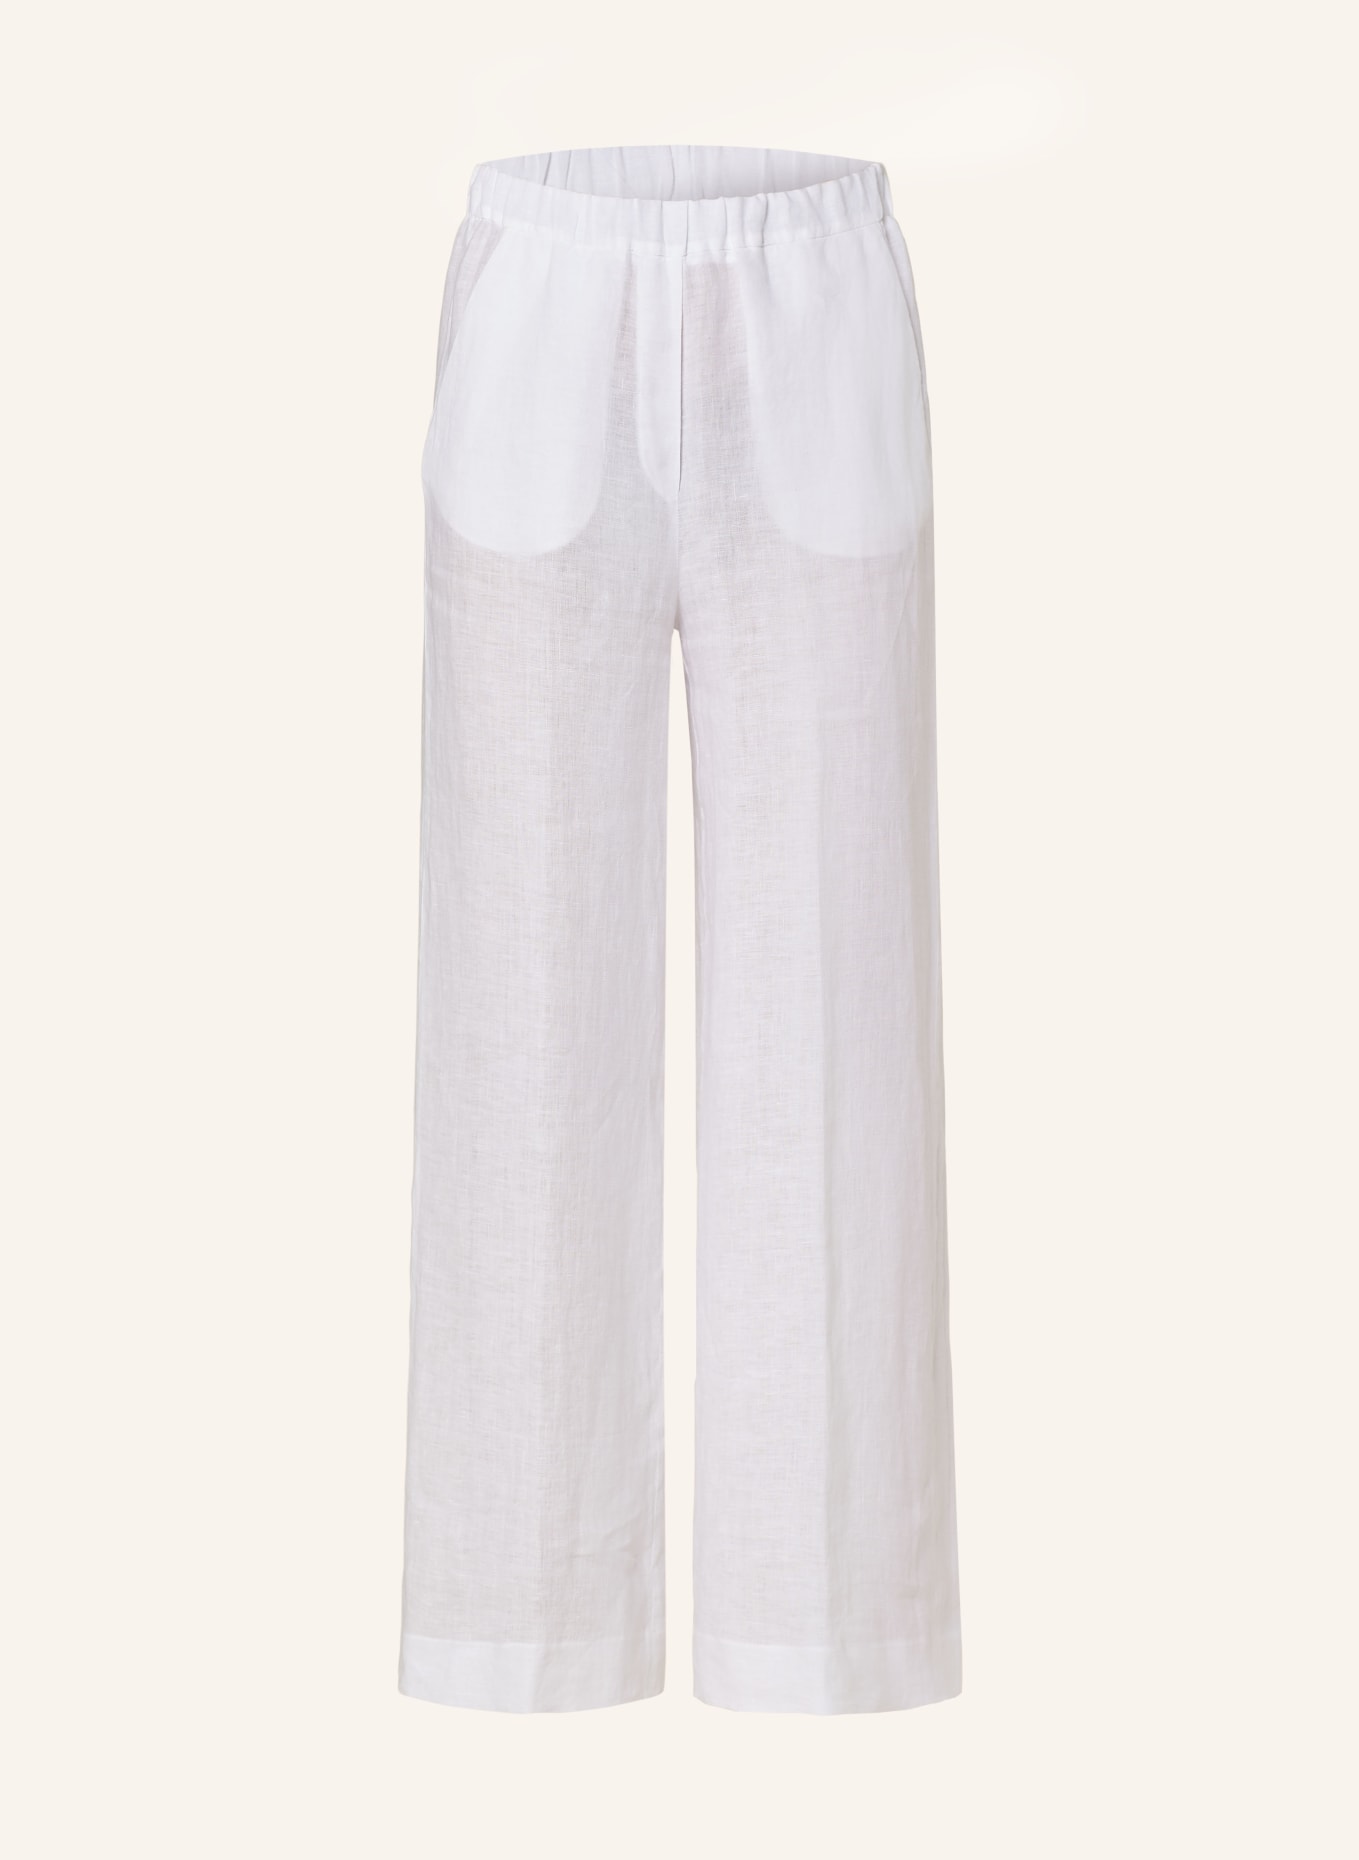 ANTONELLI firenze Wide leg trousers ROCHETTE made of linen, Color: WHITE (Image 1)